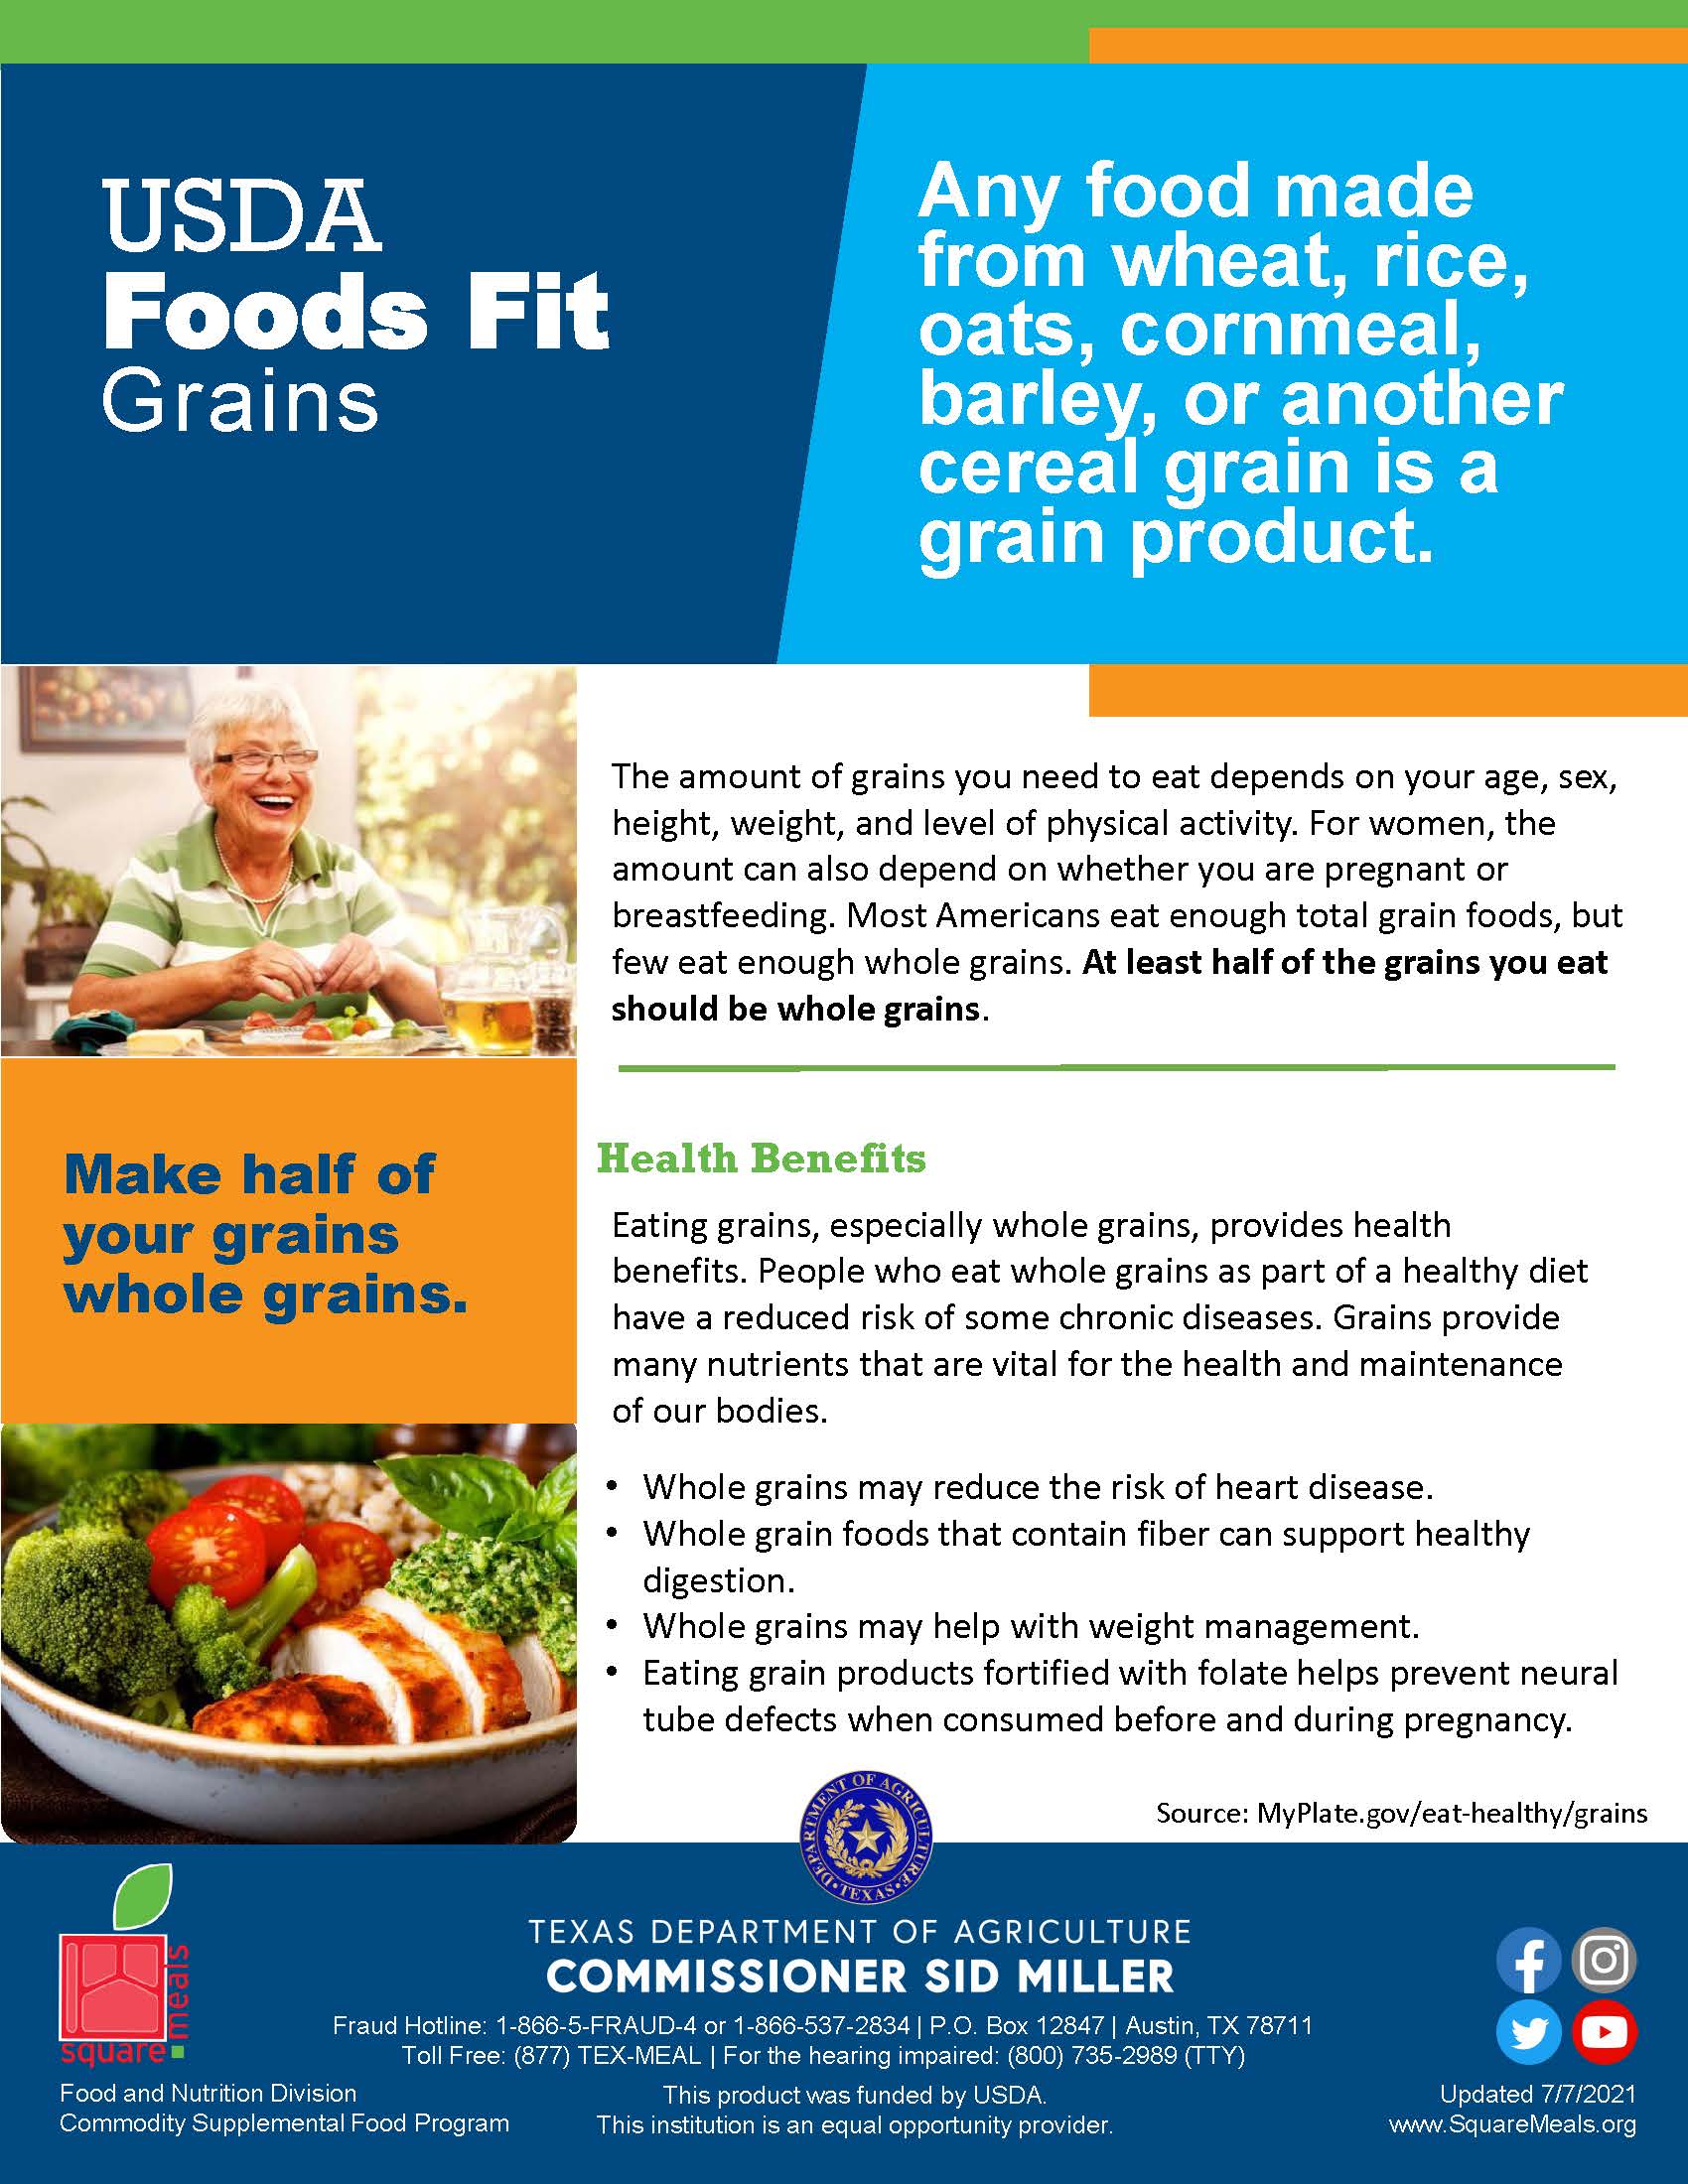 USDA Foods Fit - Grains